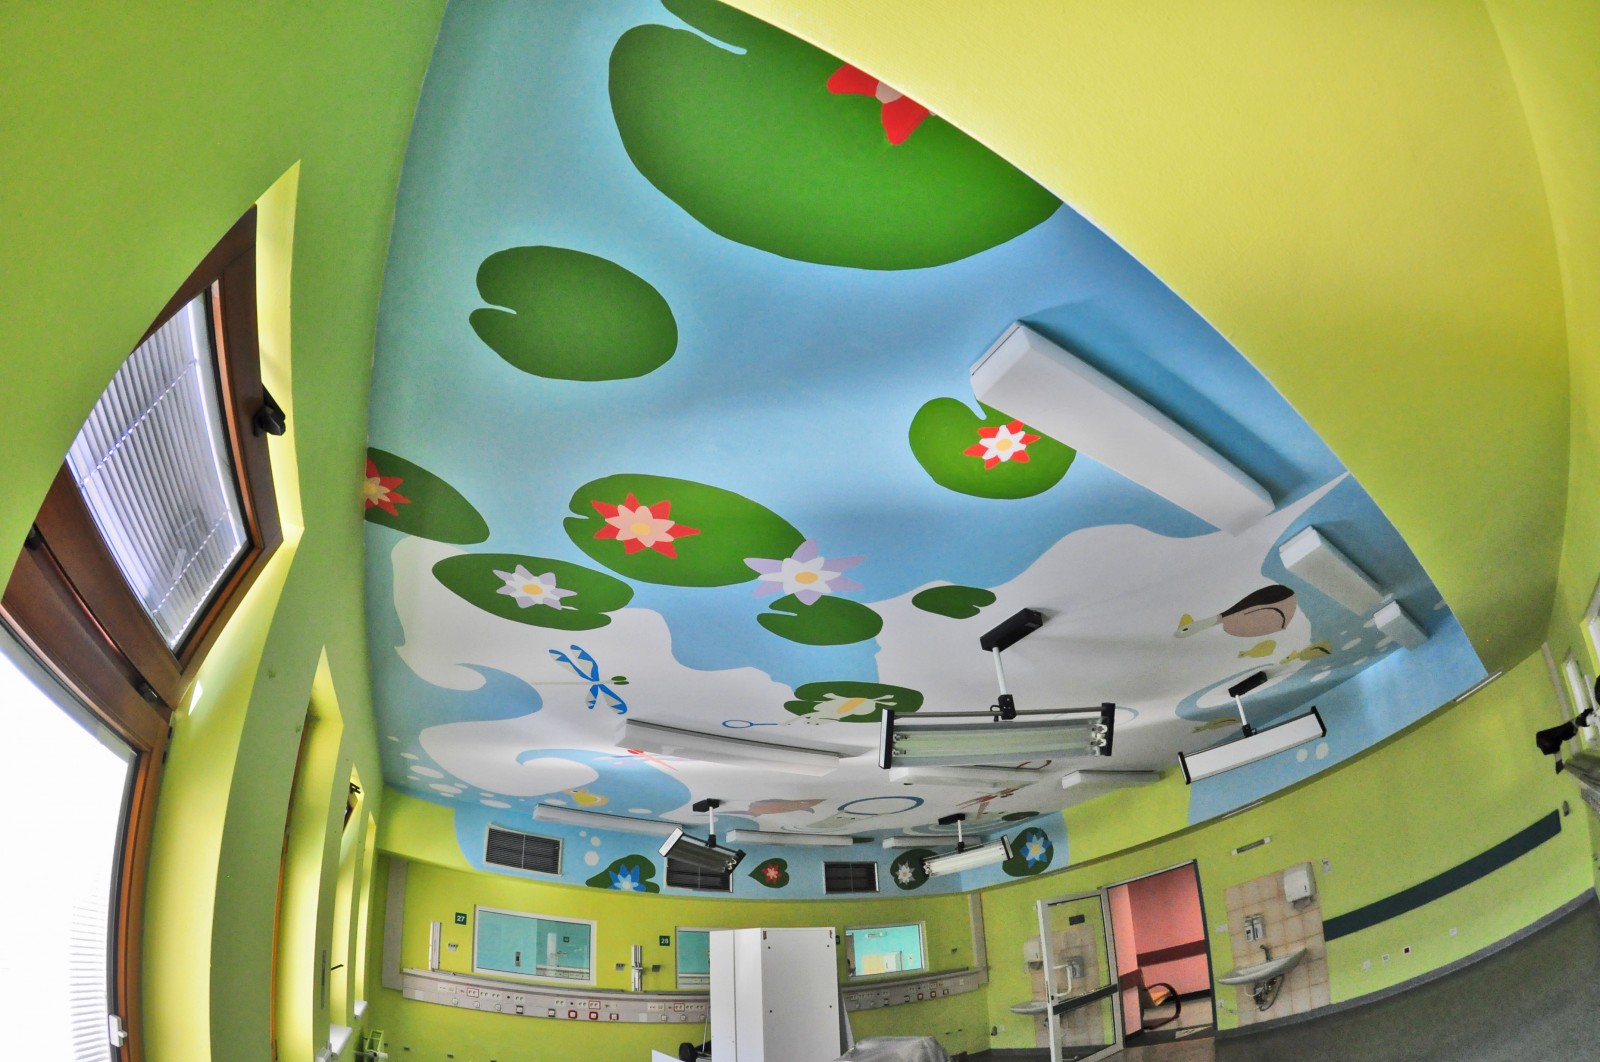 Przemalowany sufit w Centrum Zdrowia Dziecka w Warszawie Operacja Sufit | Operacja sufit - Centrum Zdrowia Dziecka | CSR | O nas